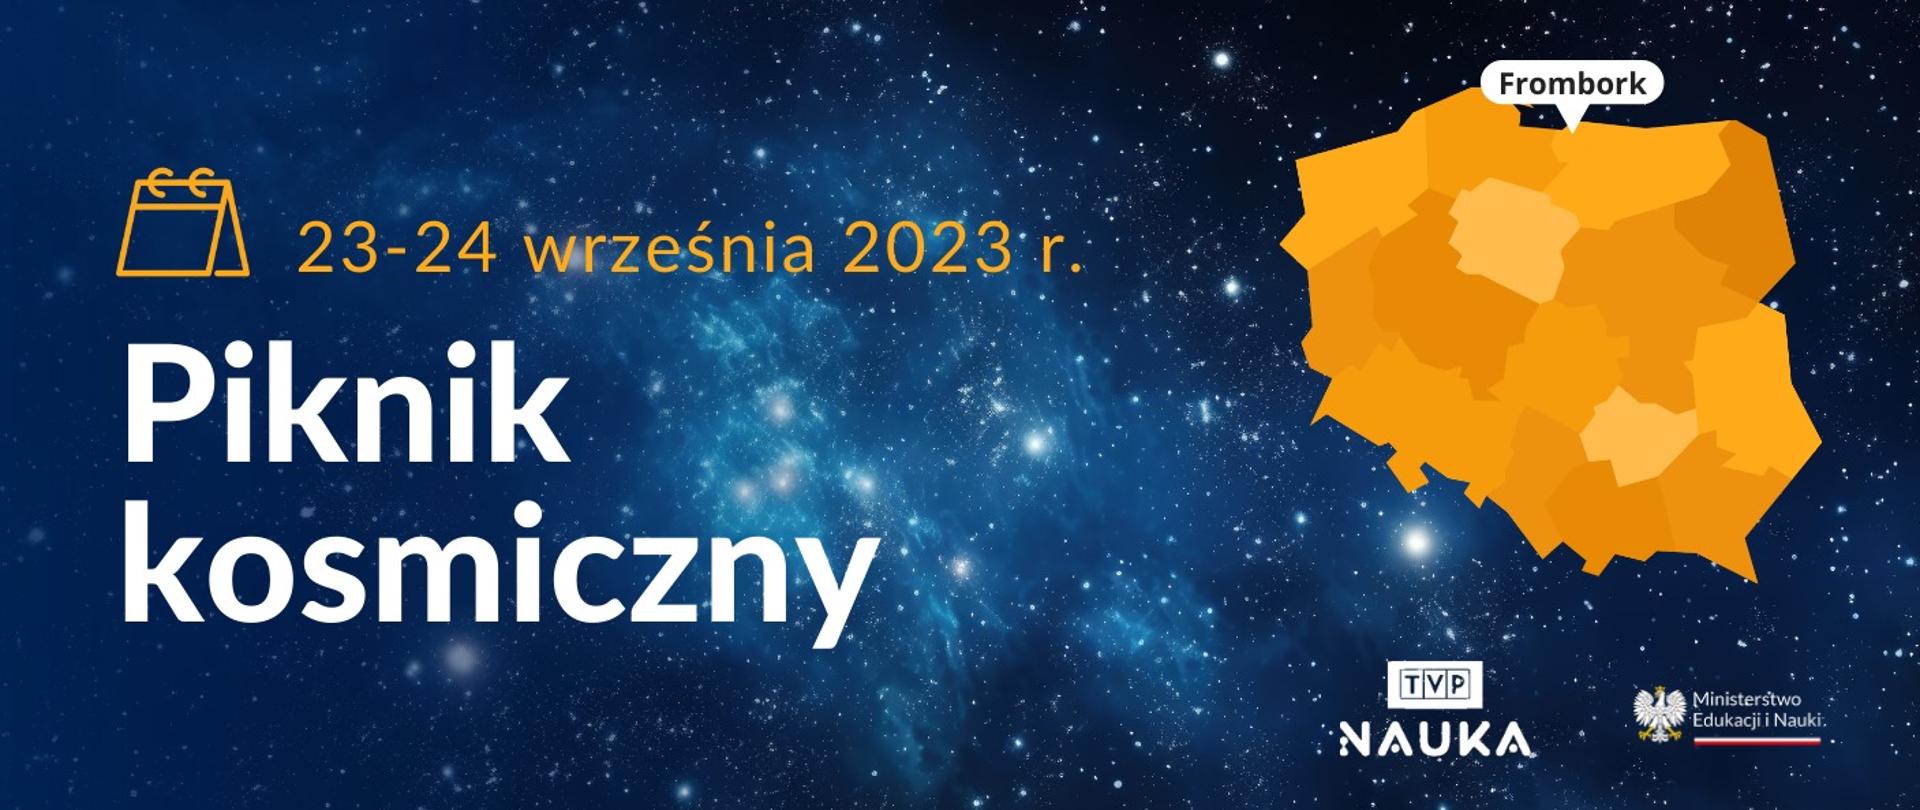 Grafika - mapa Polski na tle rozgwieżdżonego nieba, obok napis 23-24 września 2023 - piknik kosmiczny.